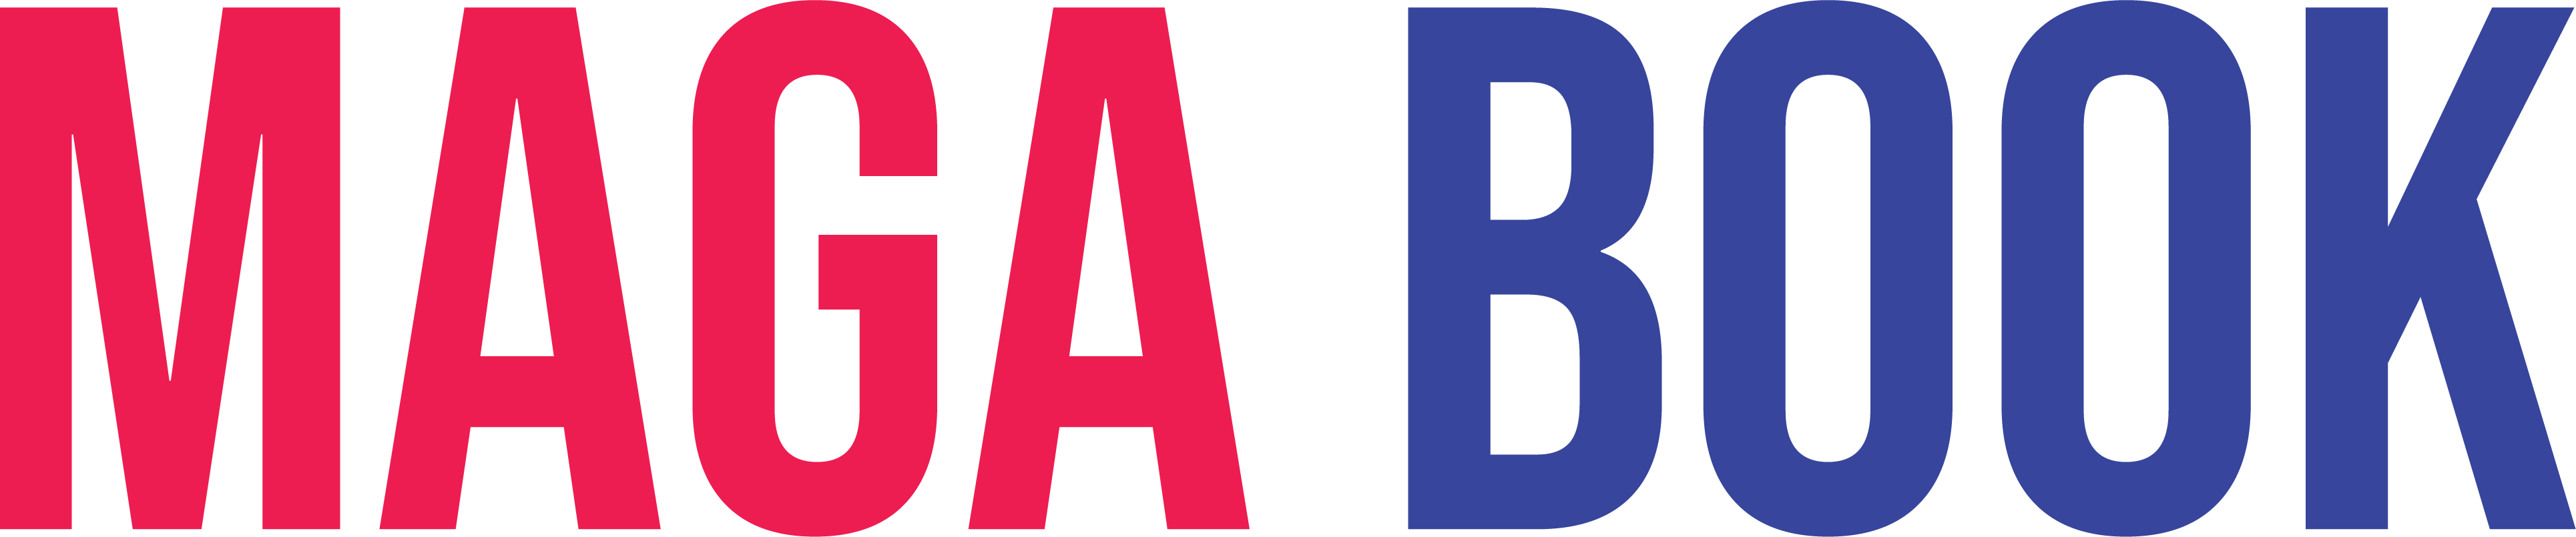 MAGABOOK - Social Media Logo